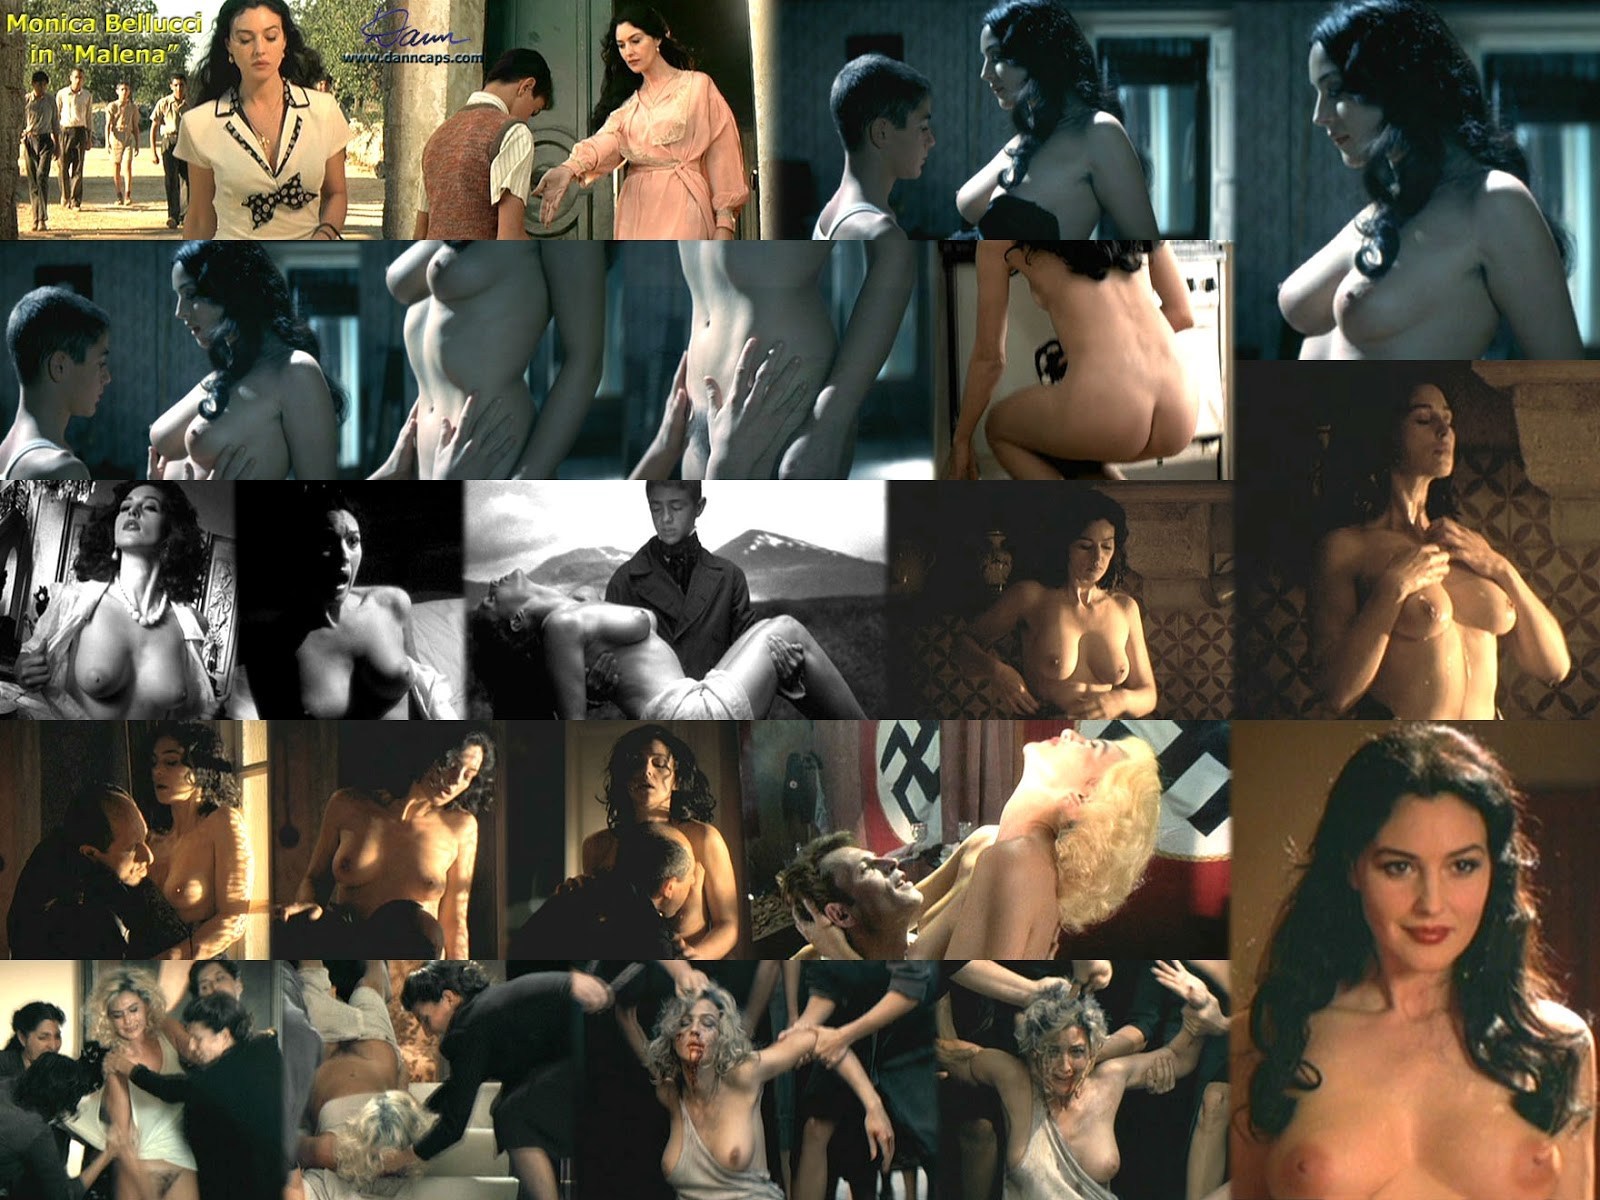 1600px x 1200px - Malena Erotic Scenes (100 photos) - motherless porn pics